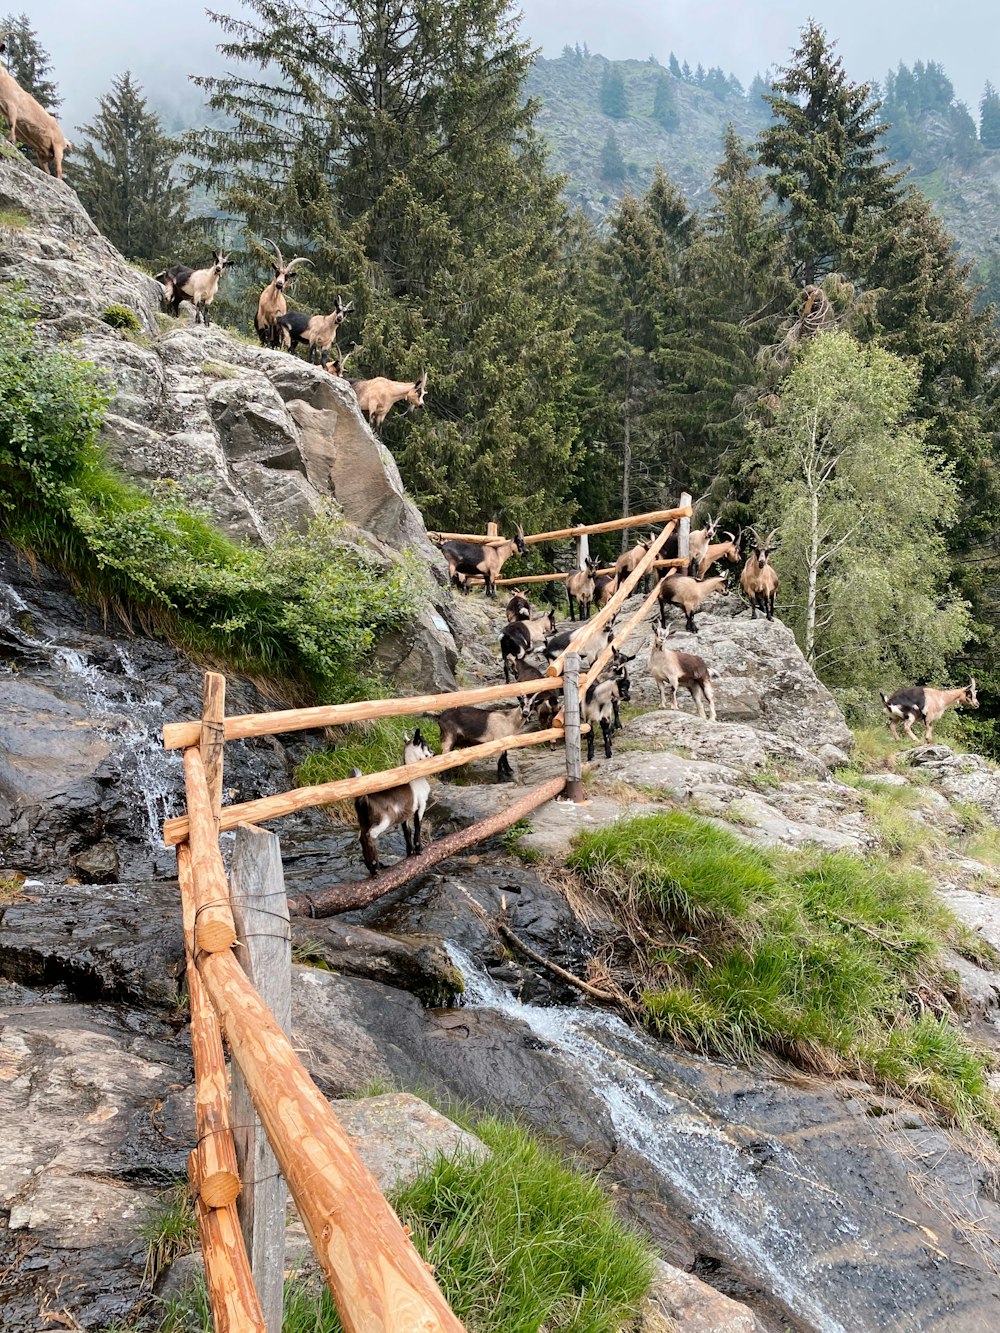 Gente que sube en la escalera de madera marrón en la montaña rocosa durante el día